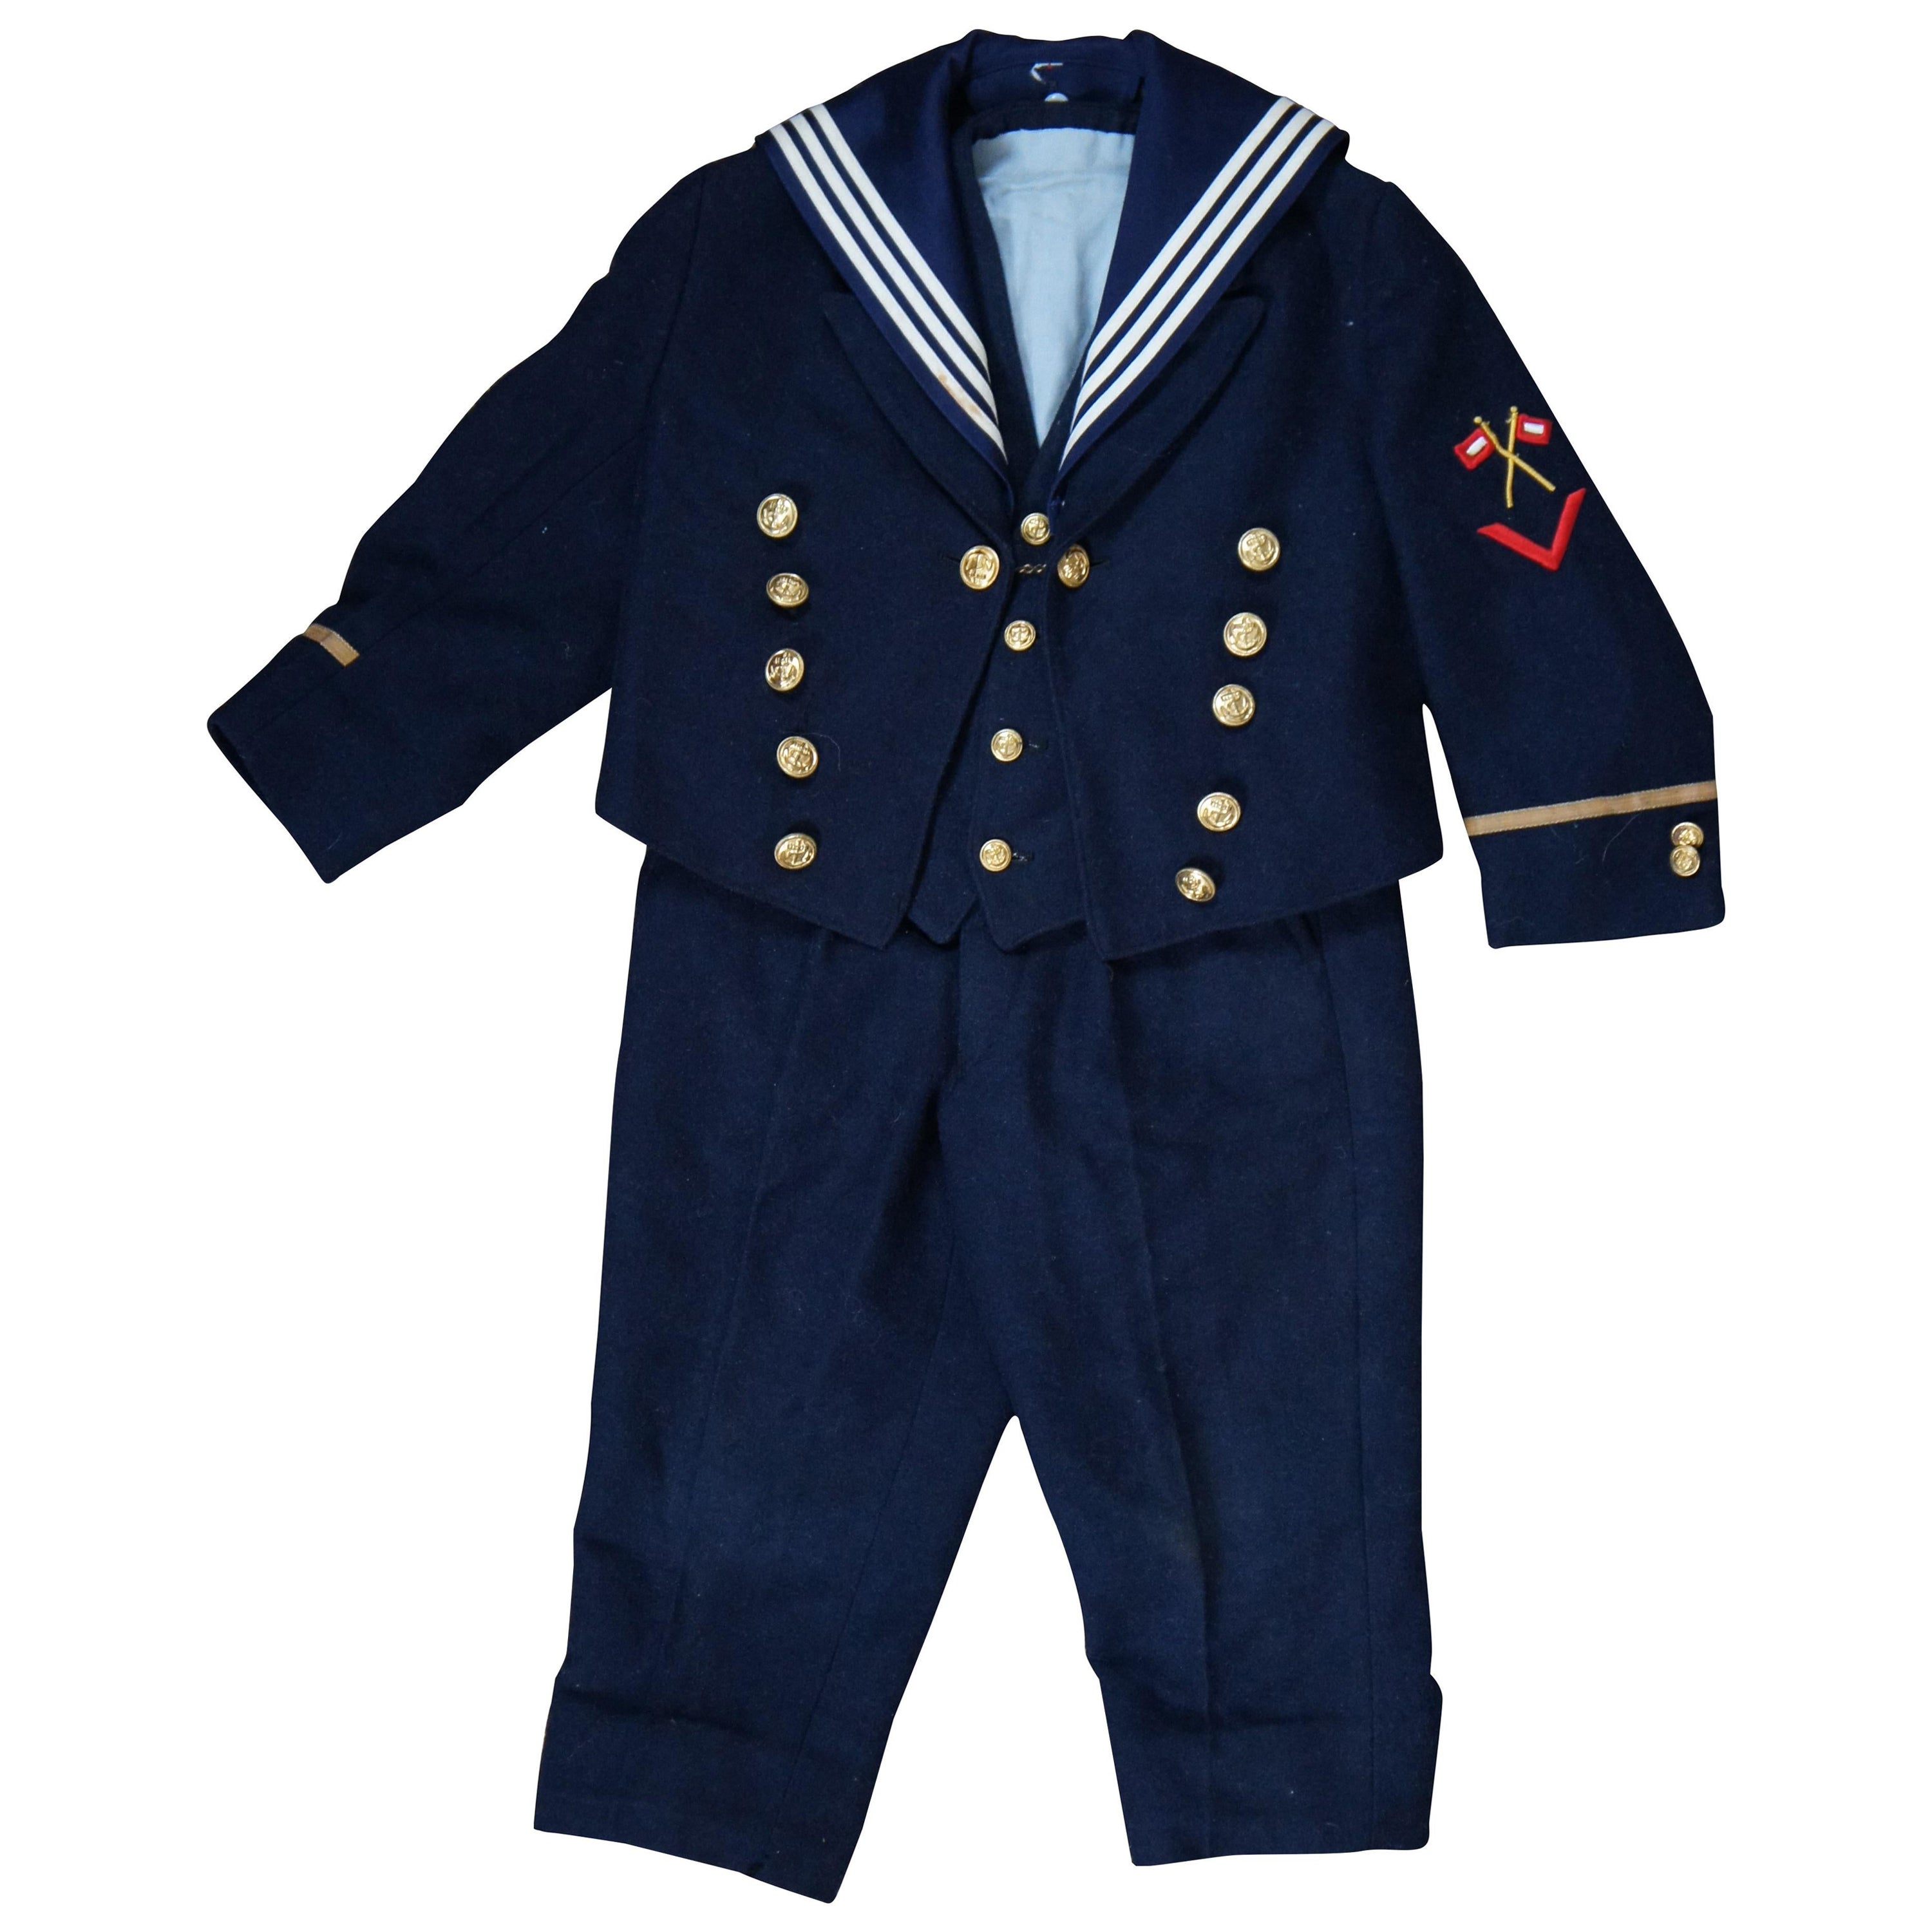 Antique German Wool Kaiserliche Marine Navy Suit Toddler Child Sailor Uniform For Sale